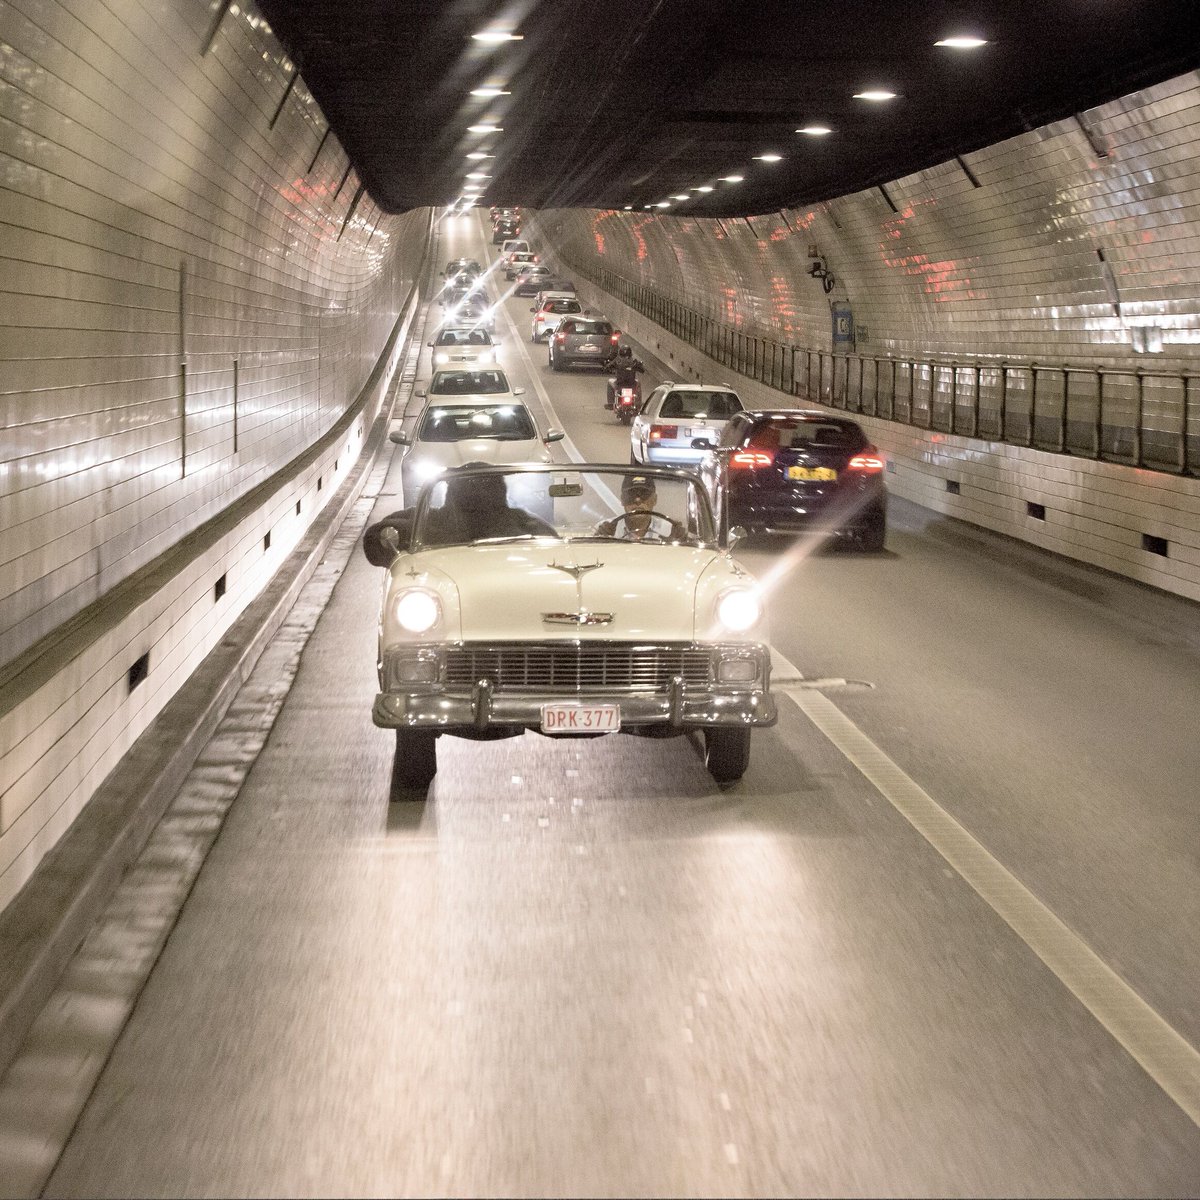 Opgelet: vanaf 23 april geldt een #snelheidsbeperking van 30 km/u in de #Waaslandtunnel. 🚗 Pas je snelheid aan. Meer info 👉 bit.ly/3JnHWft